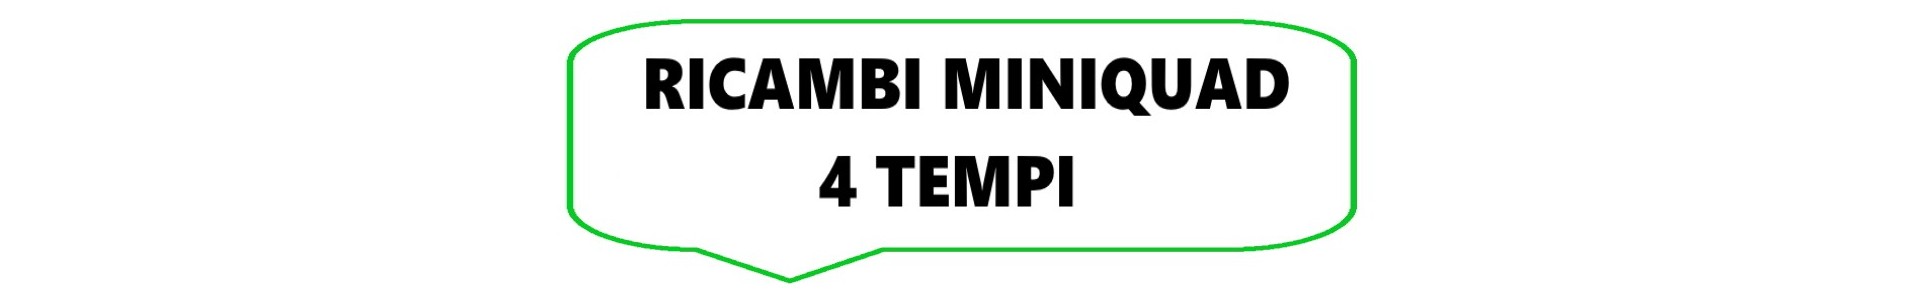 Ricambi MiniQuad 4 Tempi